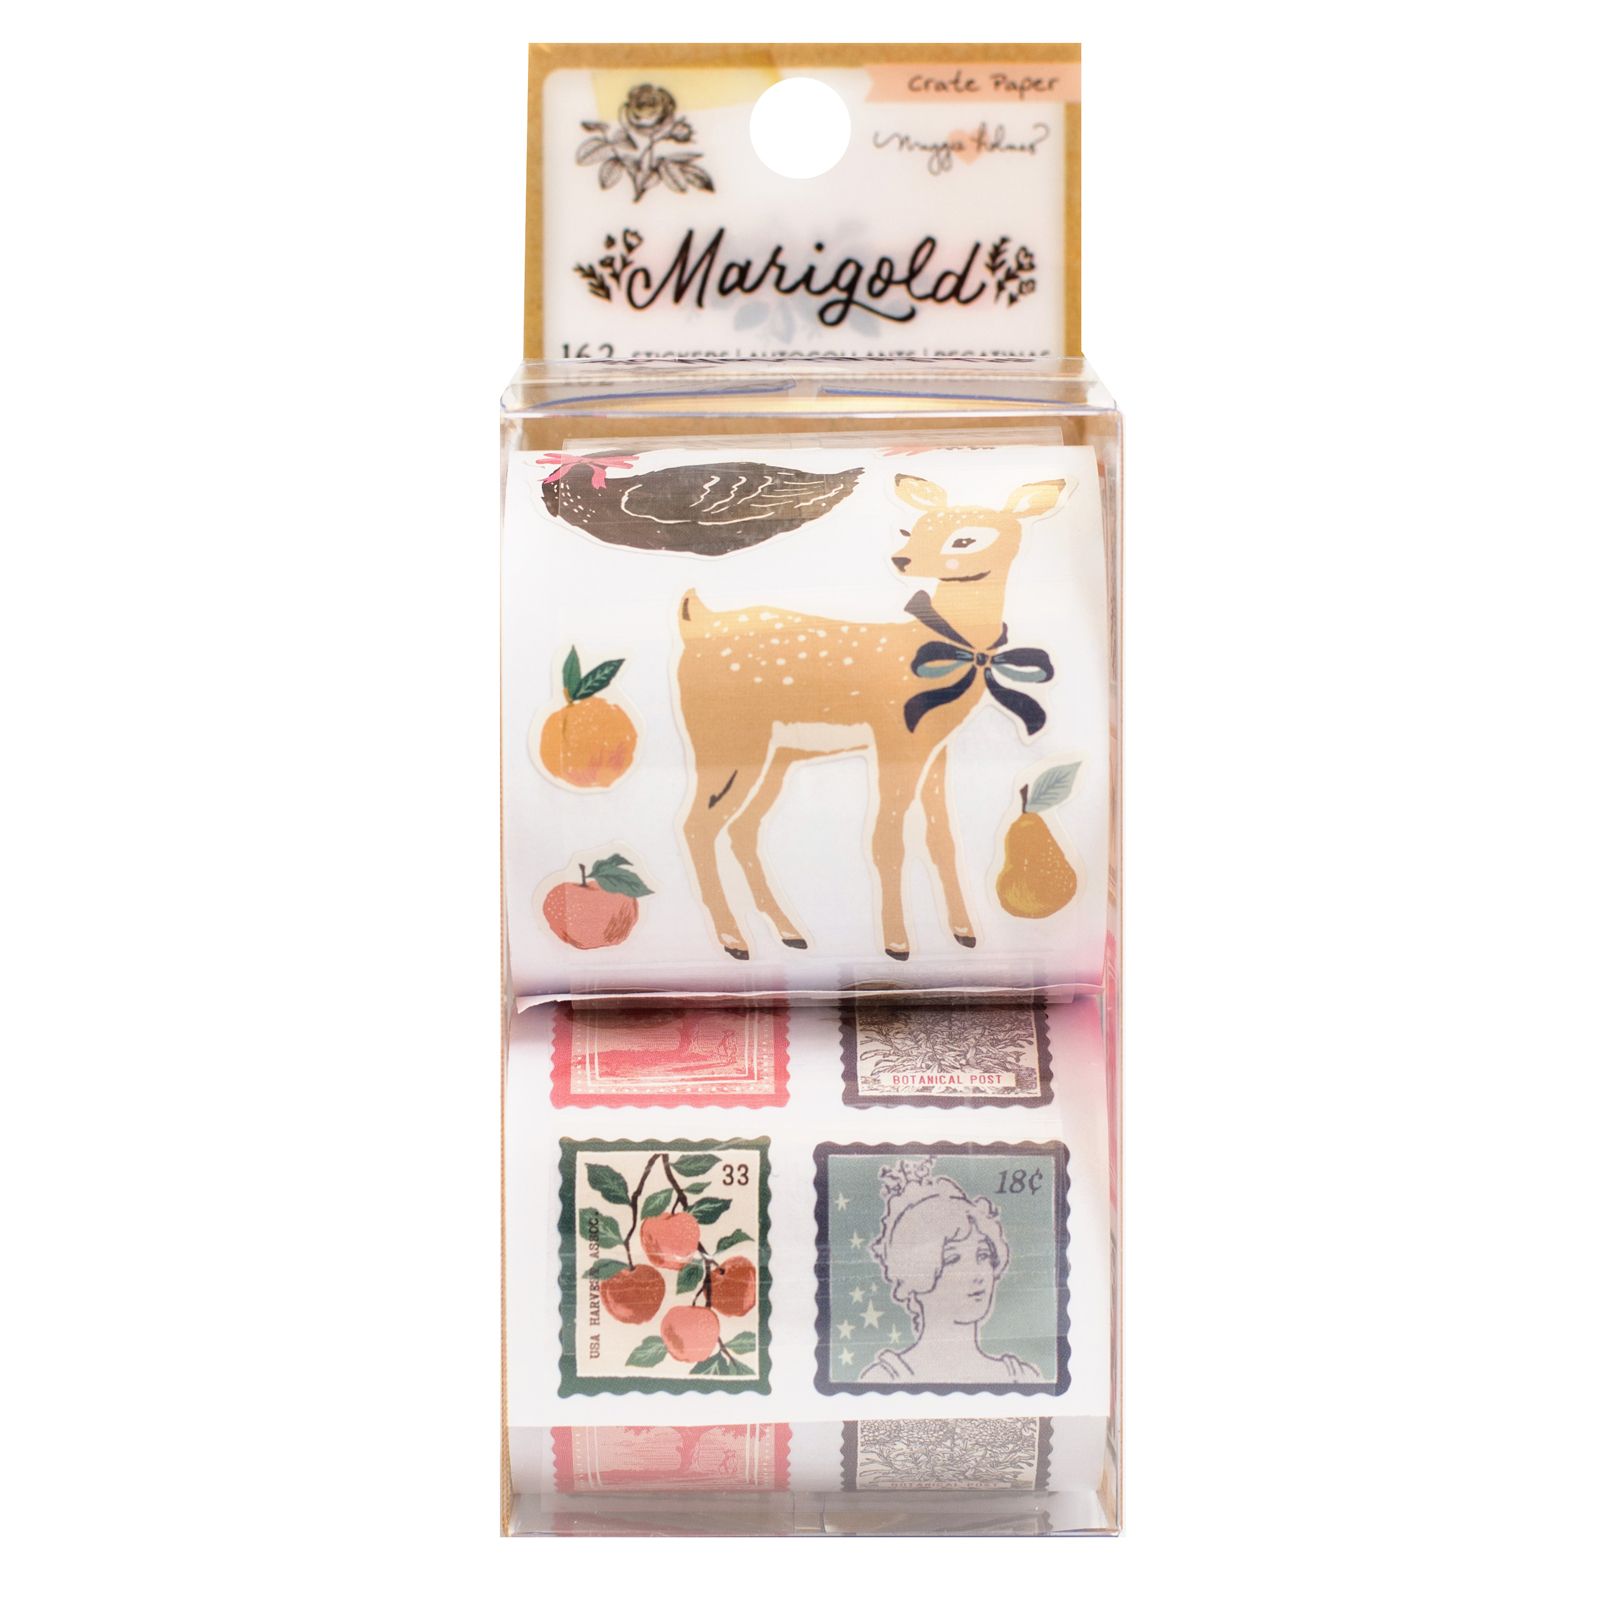 Стикеры в рулоне к коллекции "Marigold" 2 рулона (162 шт) от Crate Paper